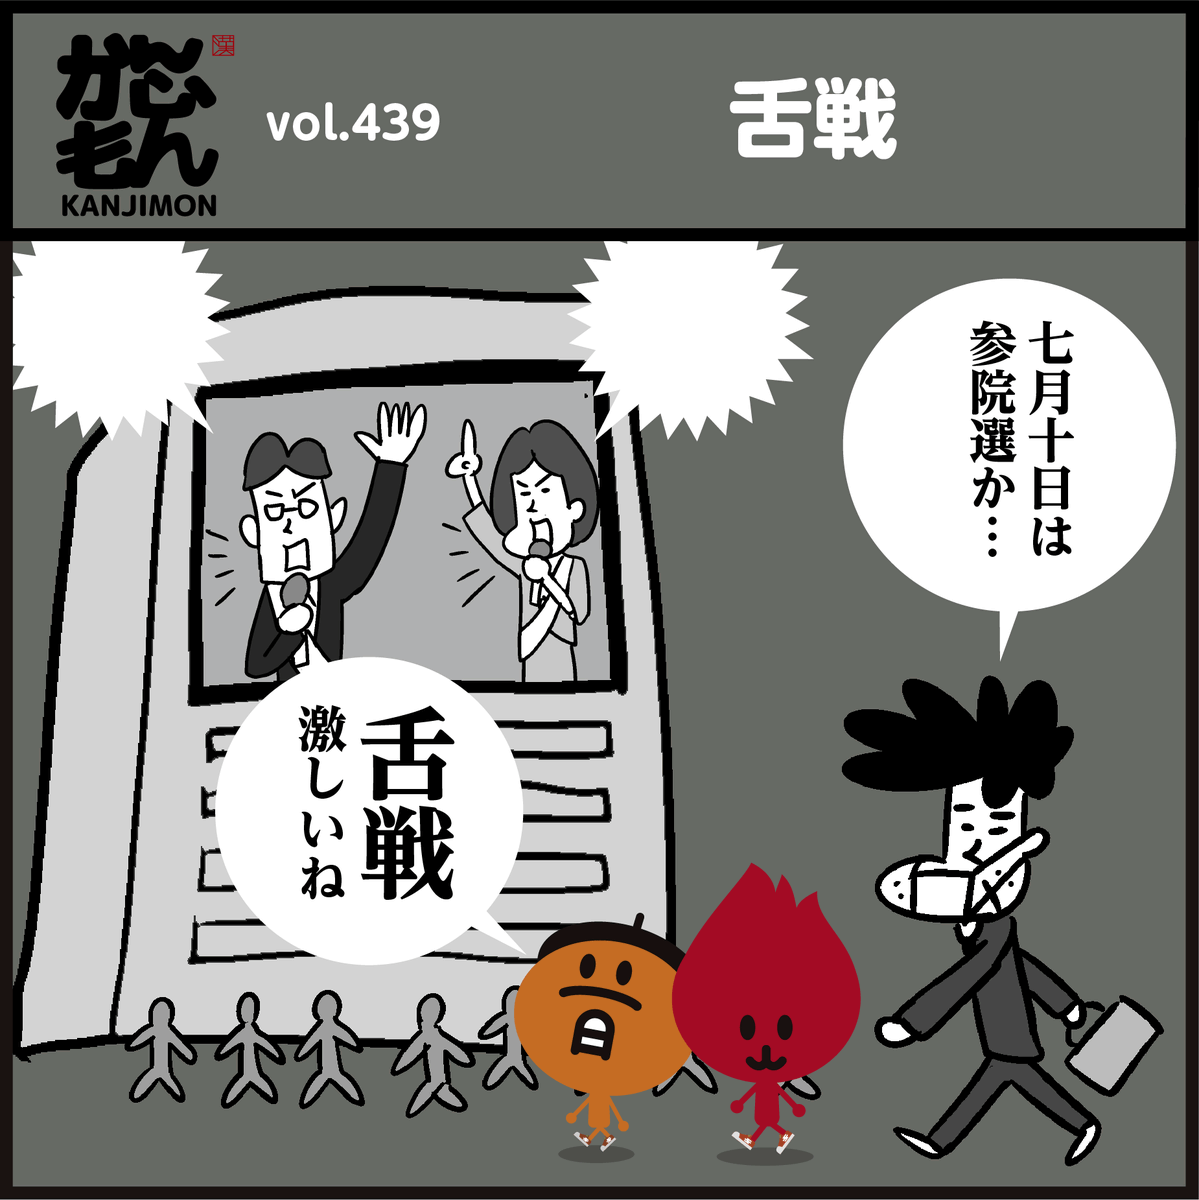 漢字【舌戦】読めましたか～?
#イラスト #4コマ漫画 #選挙 